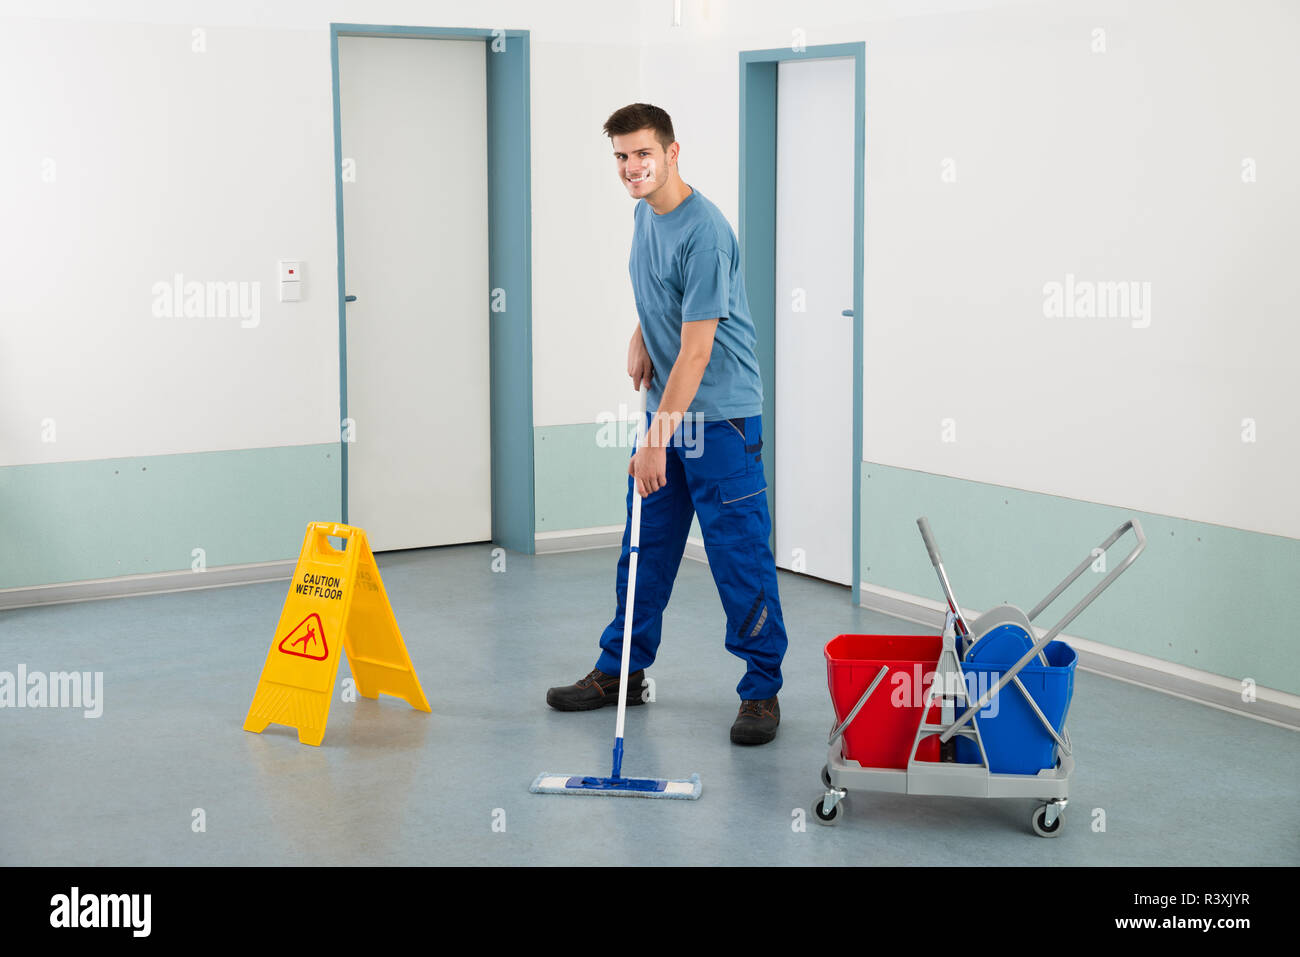 Männliche Arbeiter mit der Reinigung der Geräte Boden wischen  Stockfotografie - Alamy